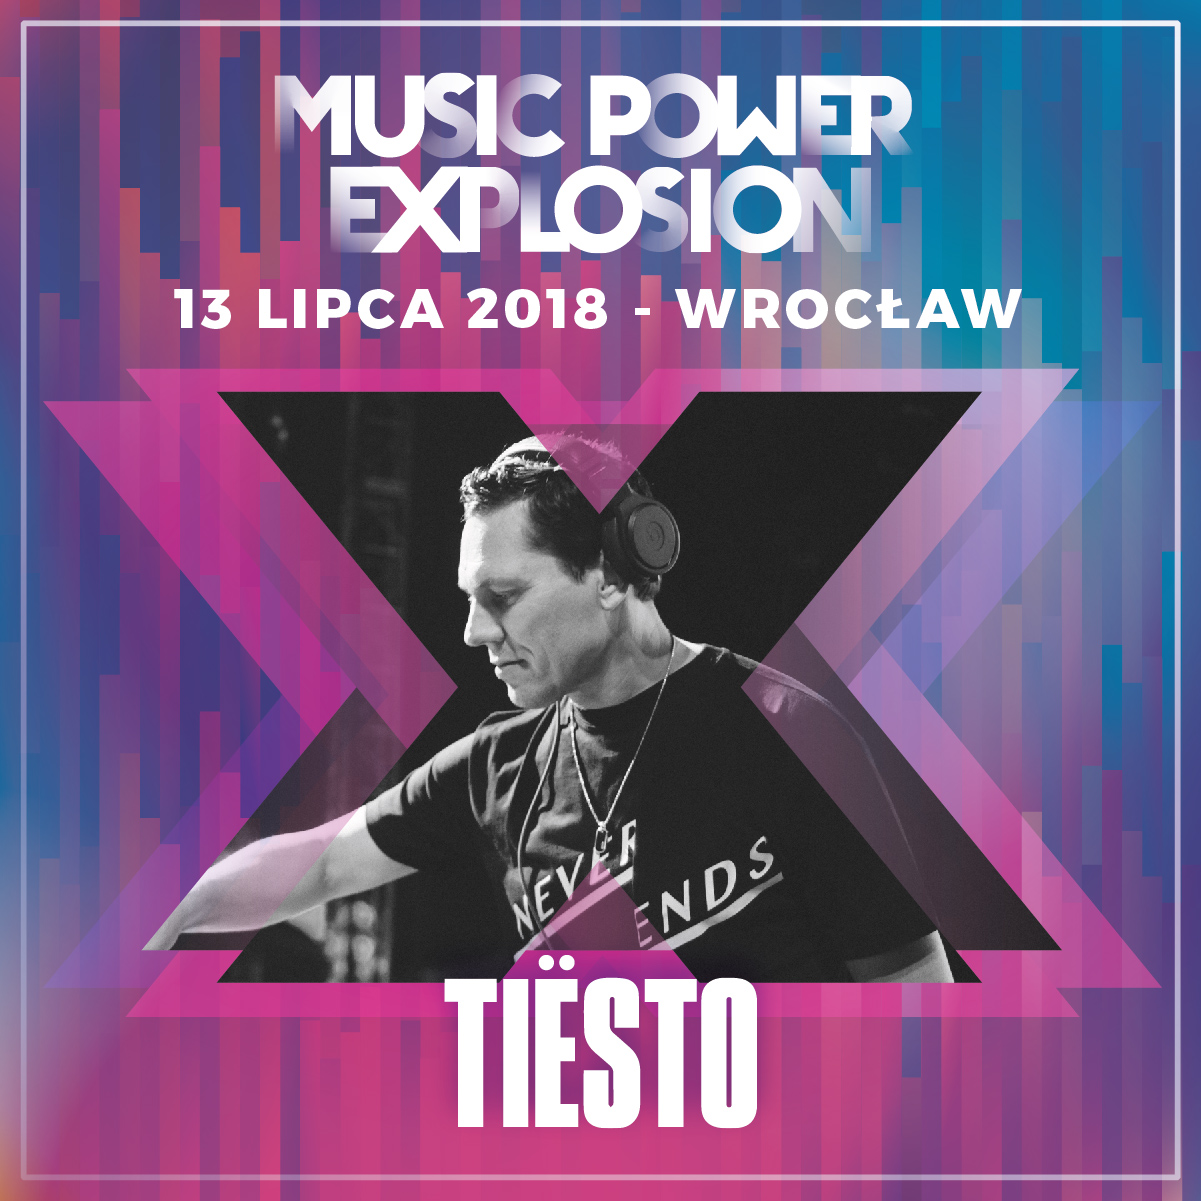 Tiësto wystąpi we Wrocławiu na Music Power Explosion!